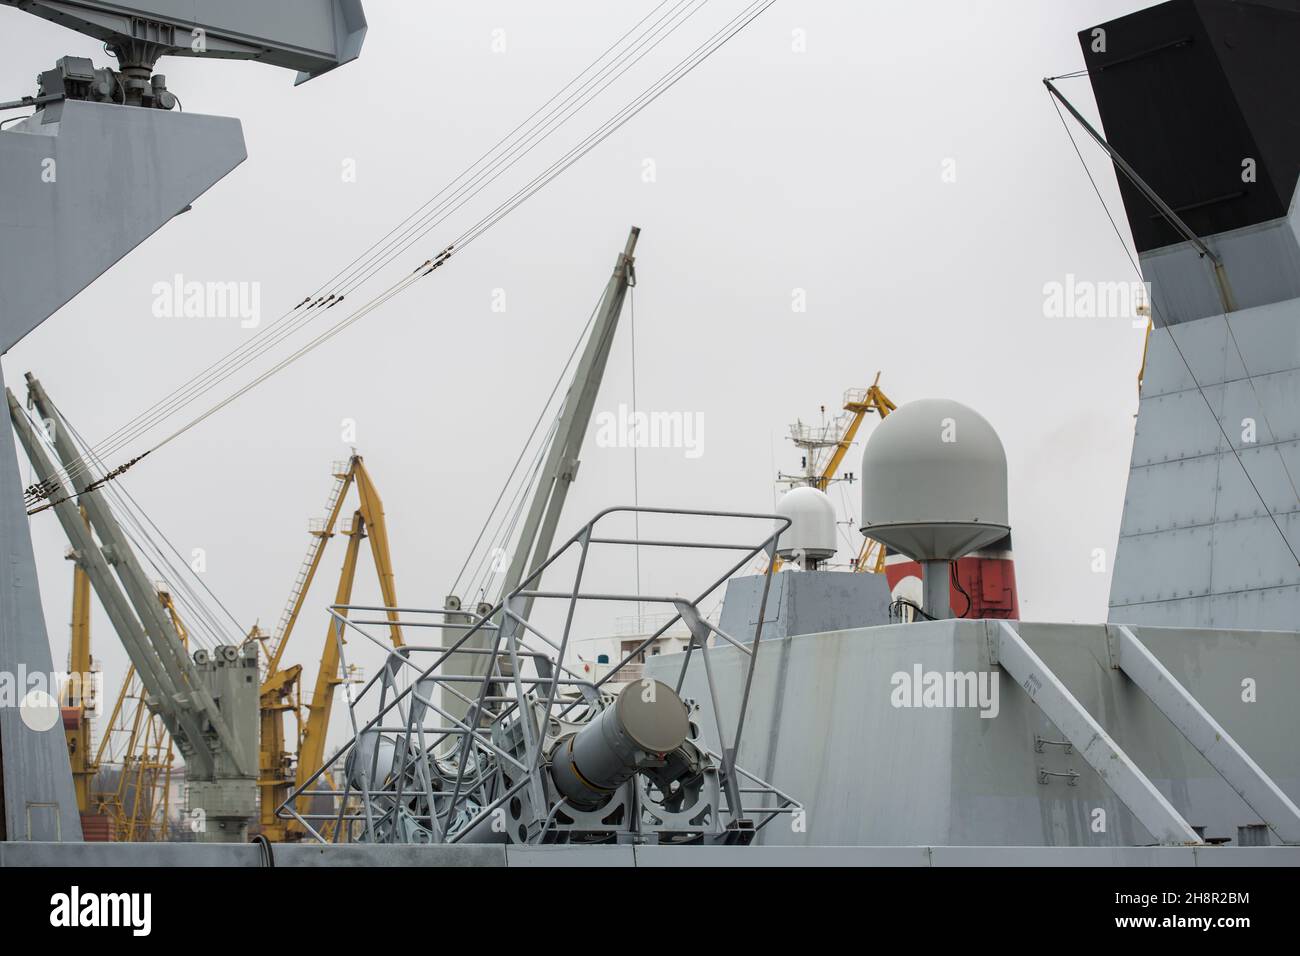 Kampfsysteme des Militärschiffs. Waffensysteme vom Typ Frigate La Fayette Marineeinheiten der NATO. Luftverteidigungssysteme von Militärschiffen Stockfoto